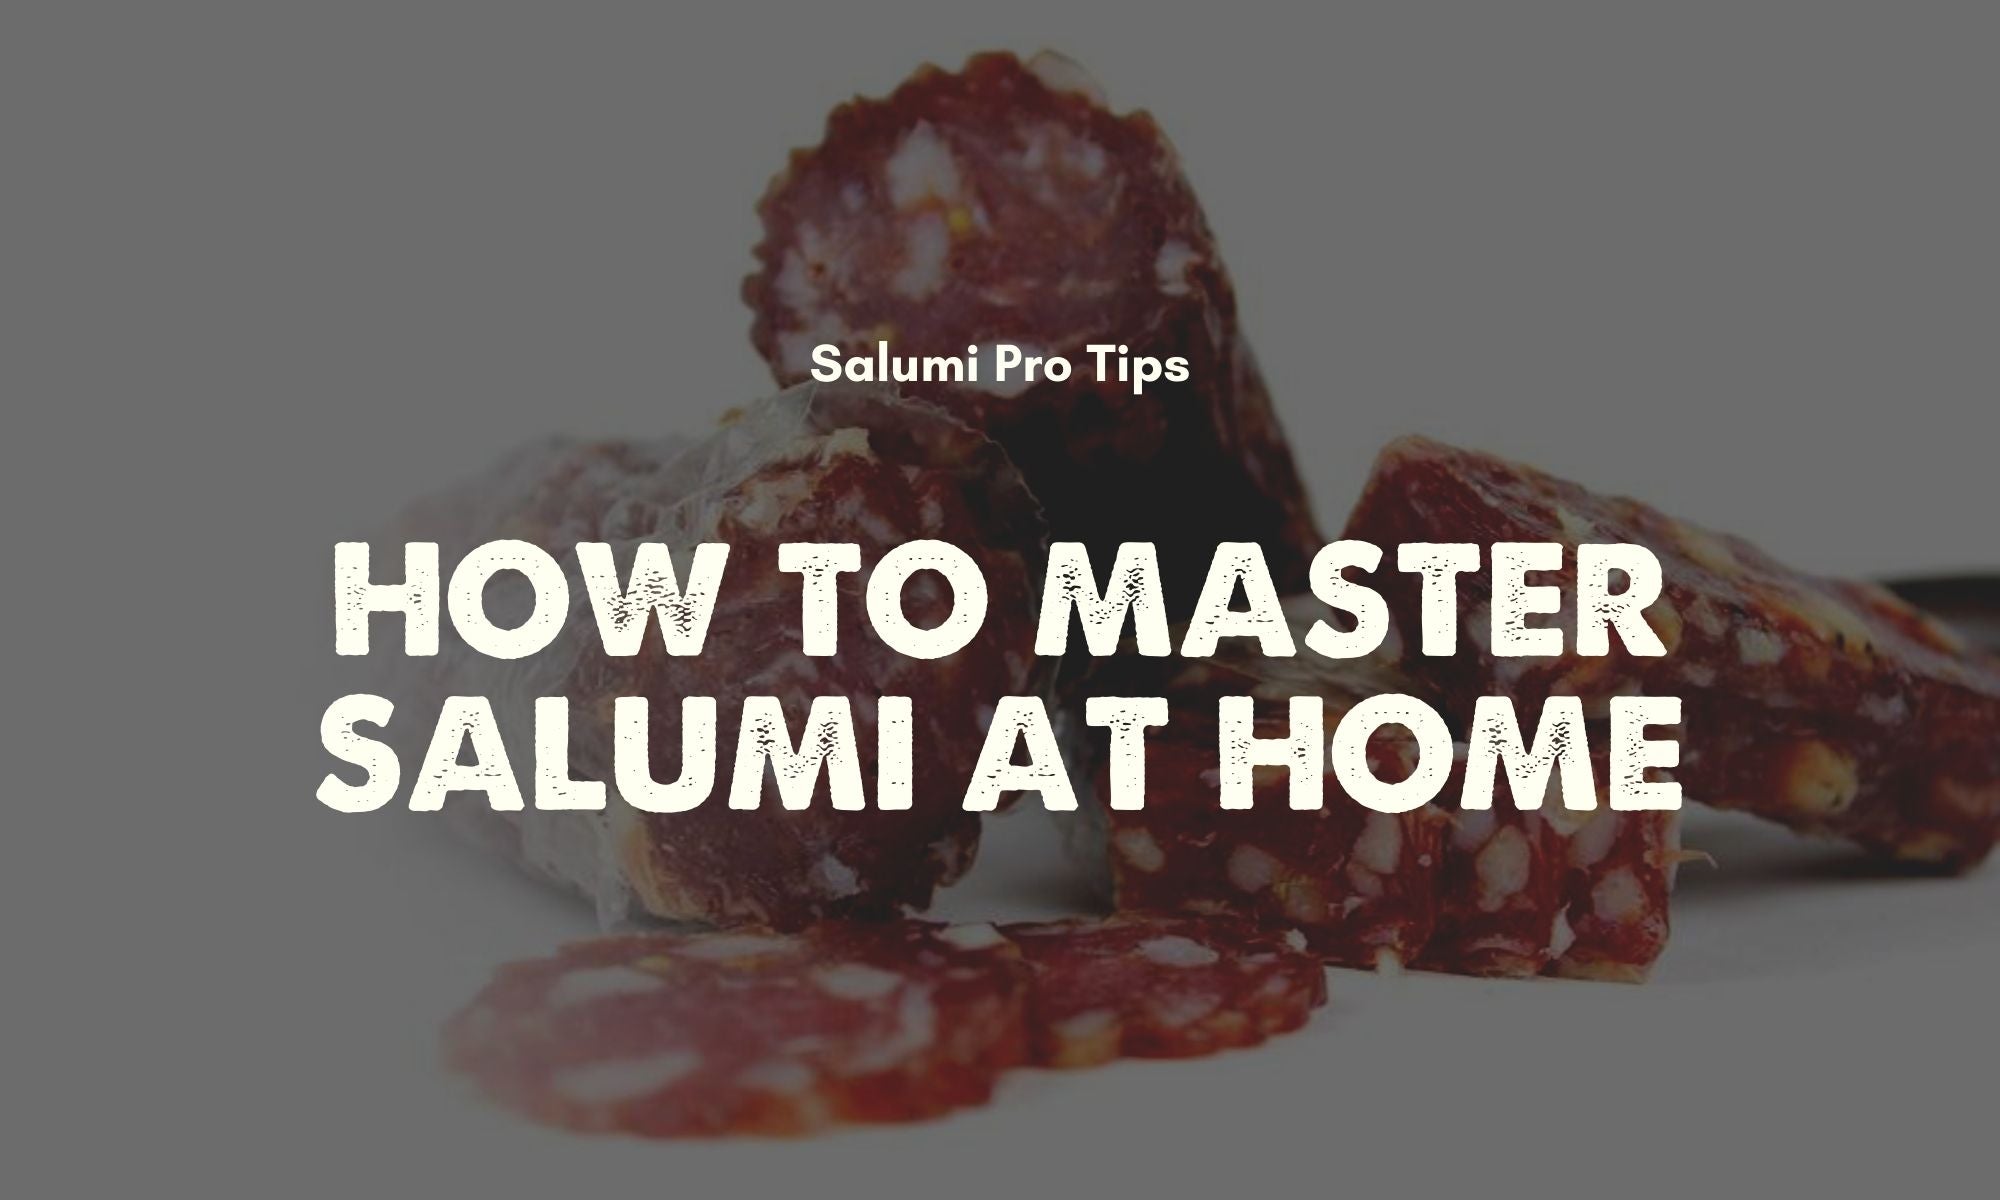 UMAi Salumi Dry Sausage Casings Help You Master Salumi at Home